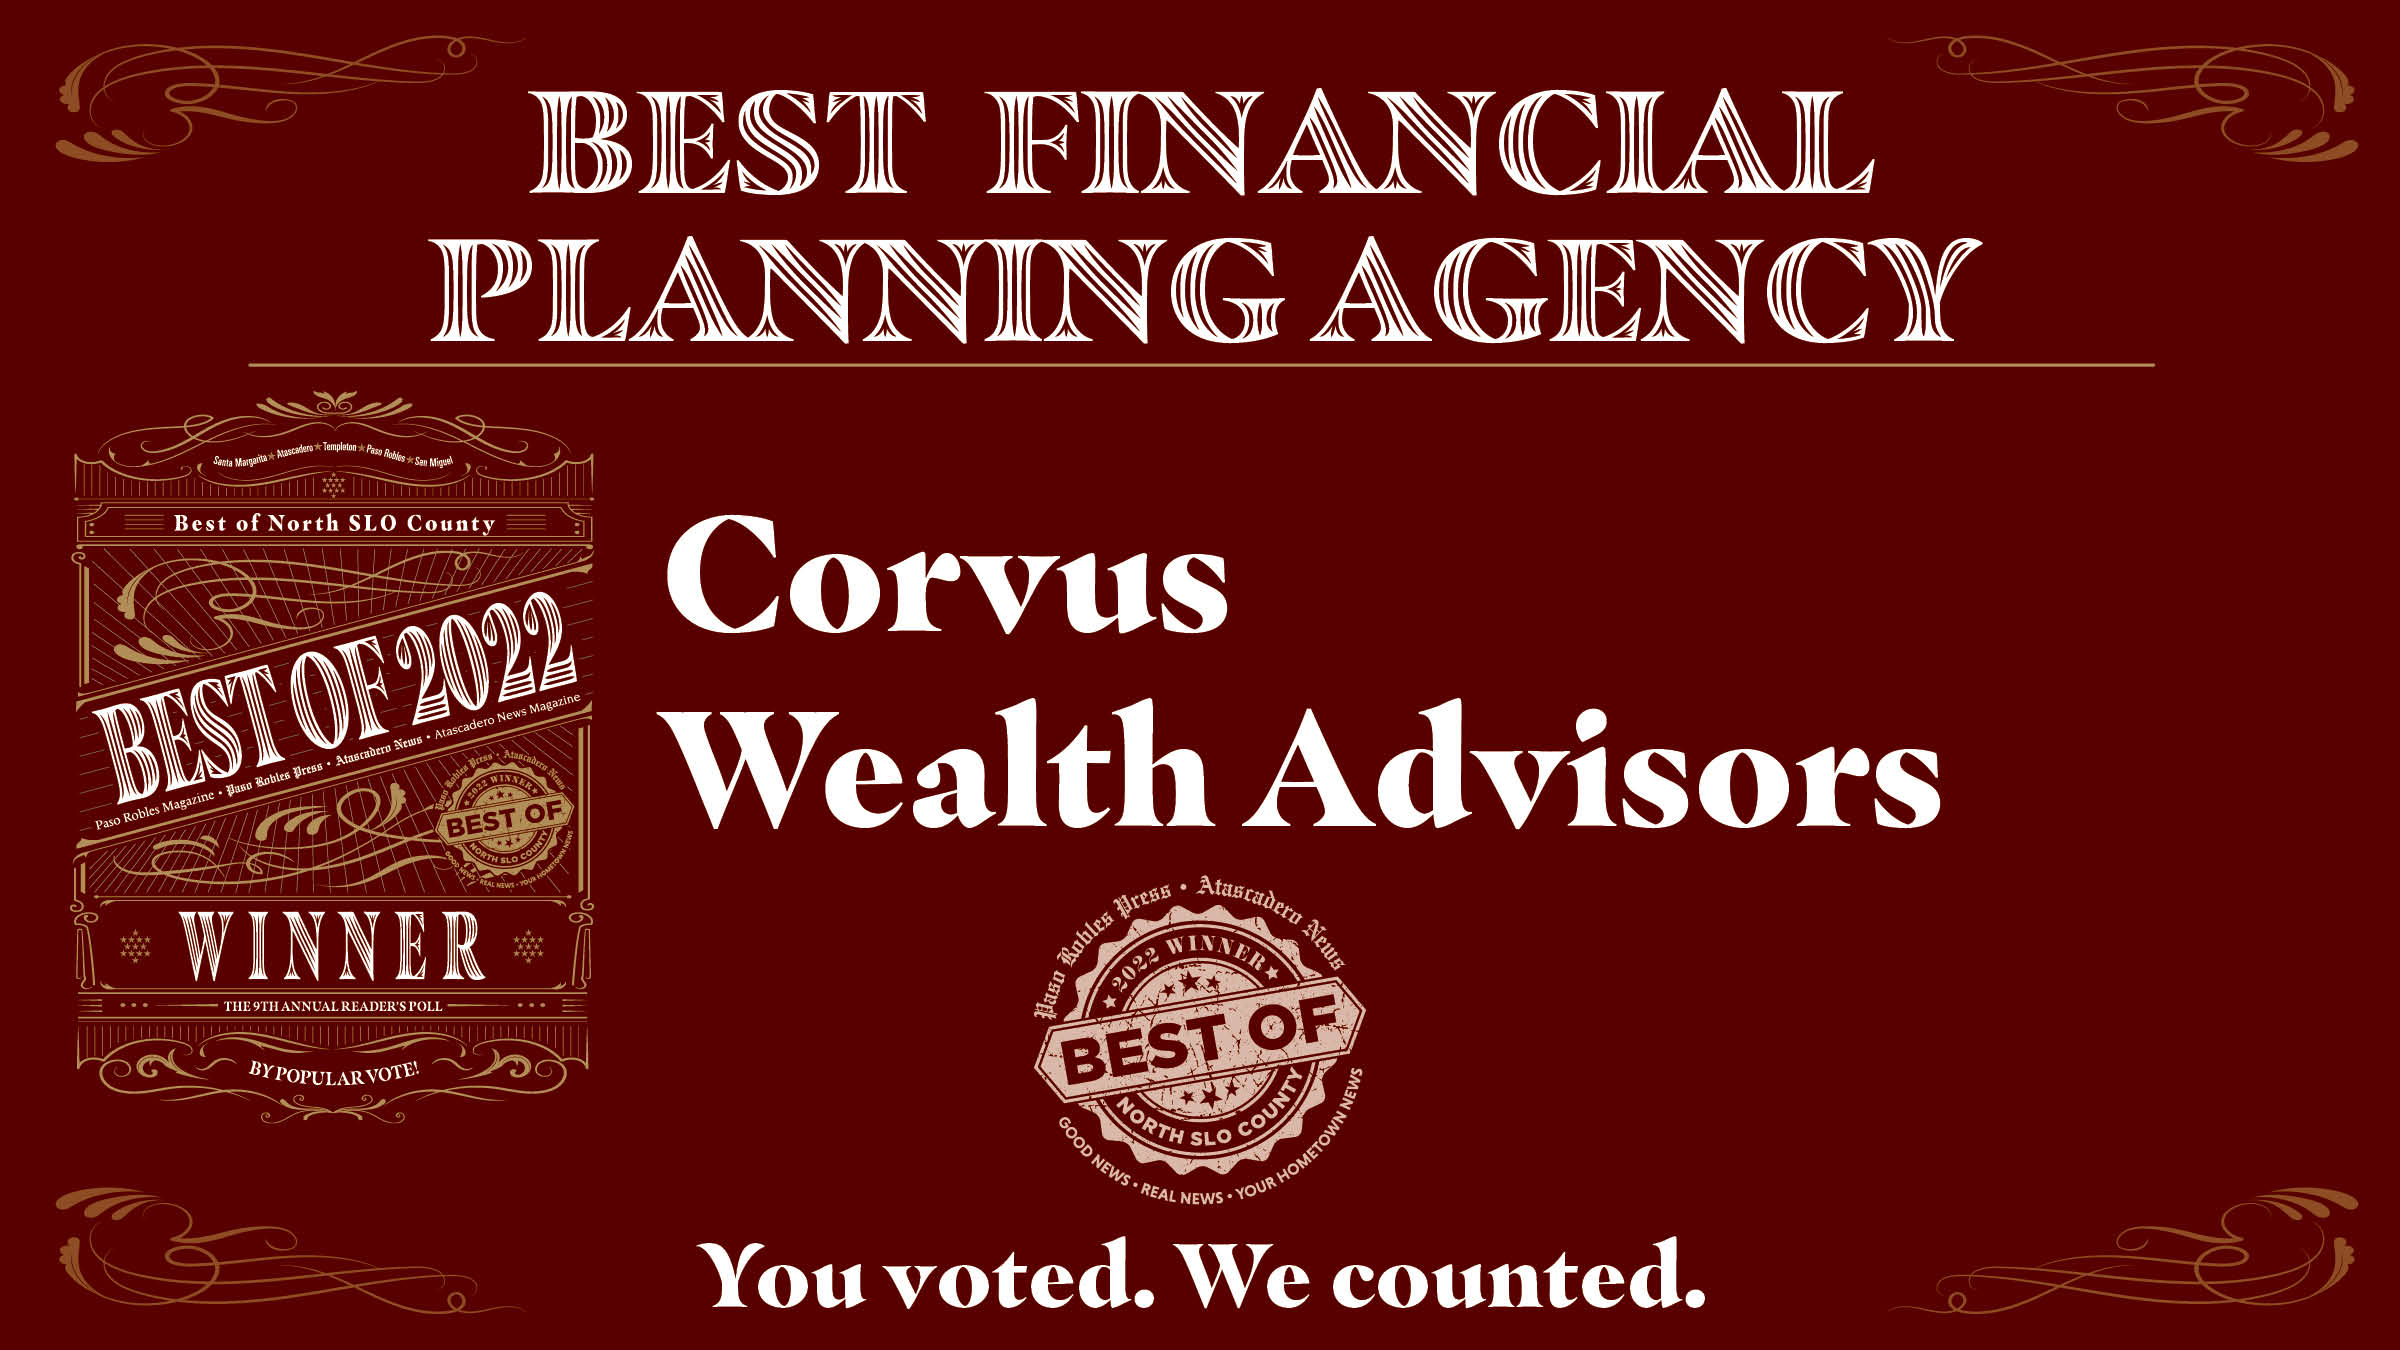 Best Financial Advisors 2022